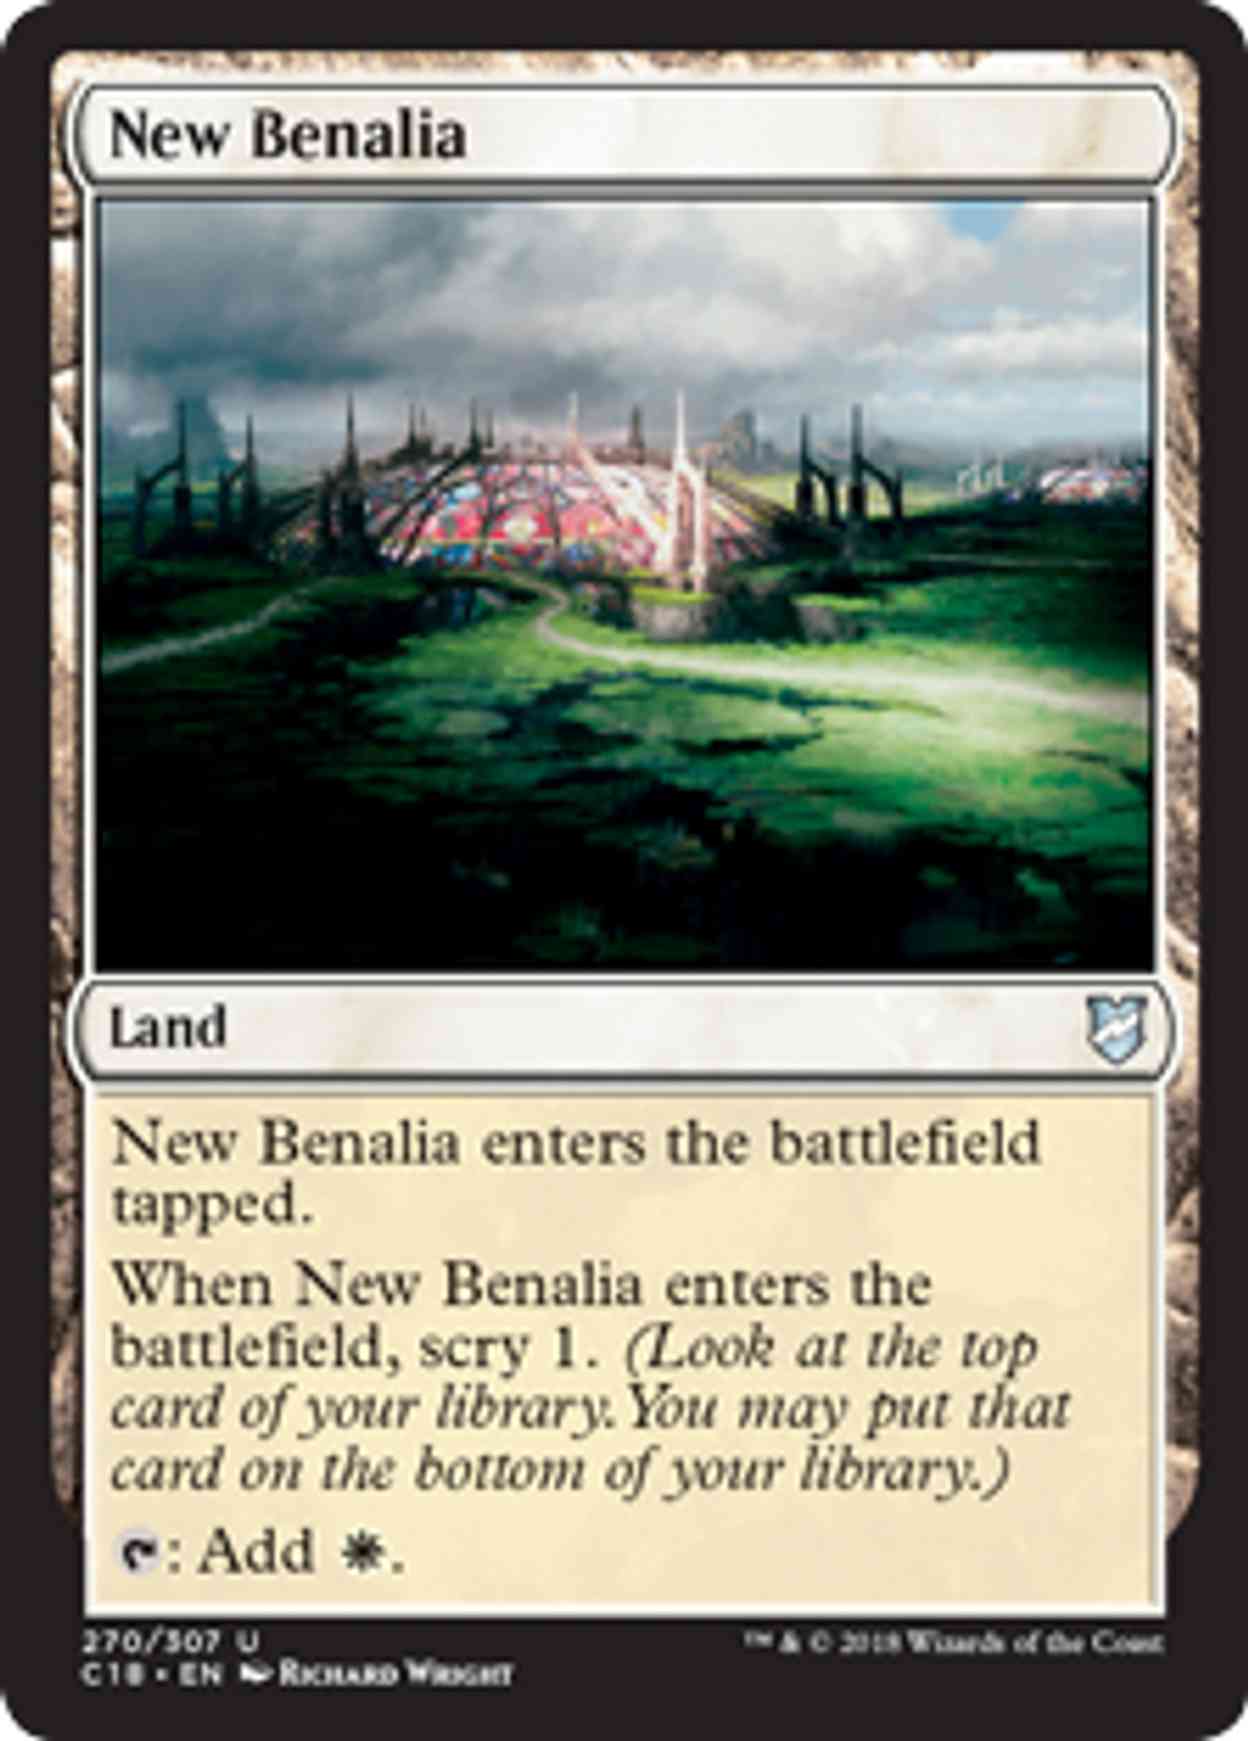 New Benalia magic card front